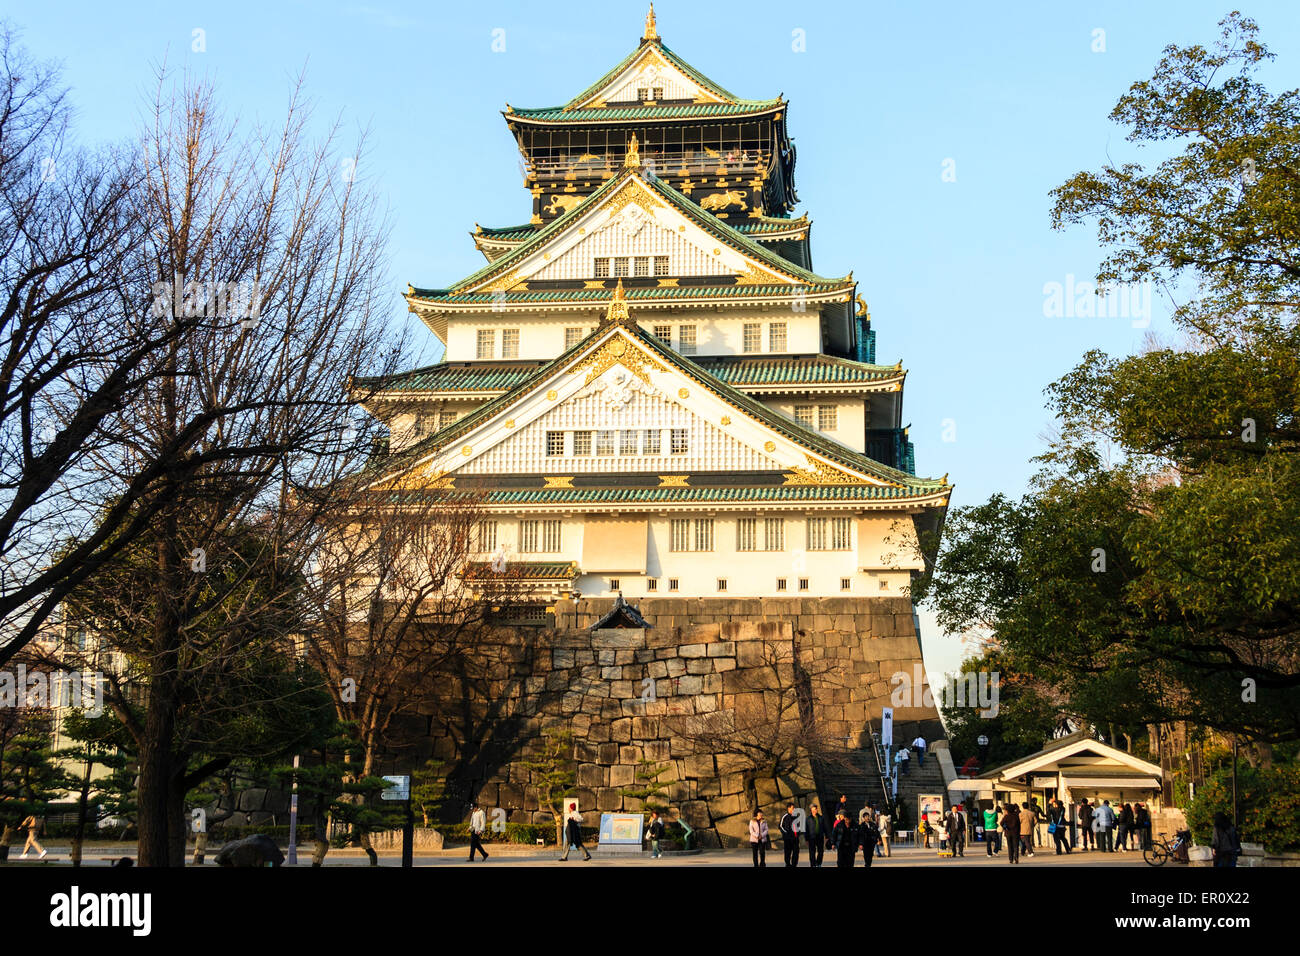 Vista invernale all'ora d'oro dell'imponente torrione in stile borogata del Castello di Osaka con le sue scuderie e la torre di guardia superiore contro il cielo blu chiaro. Foto Stock